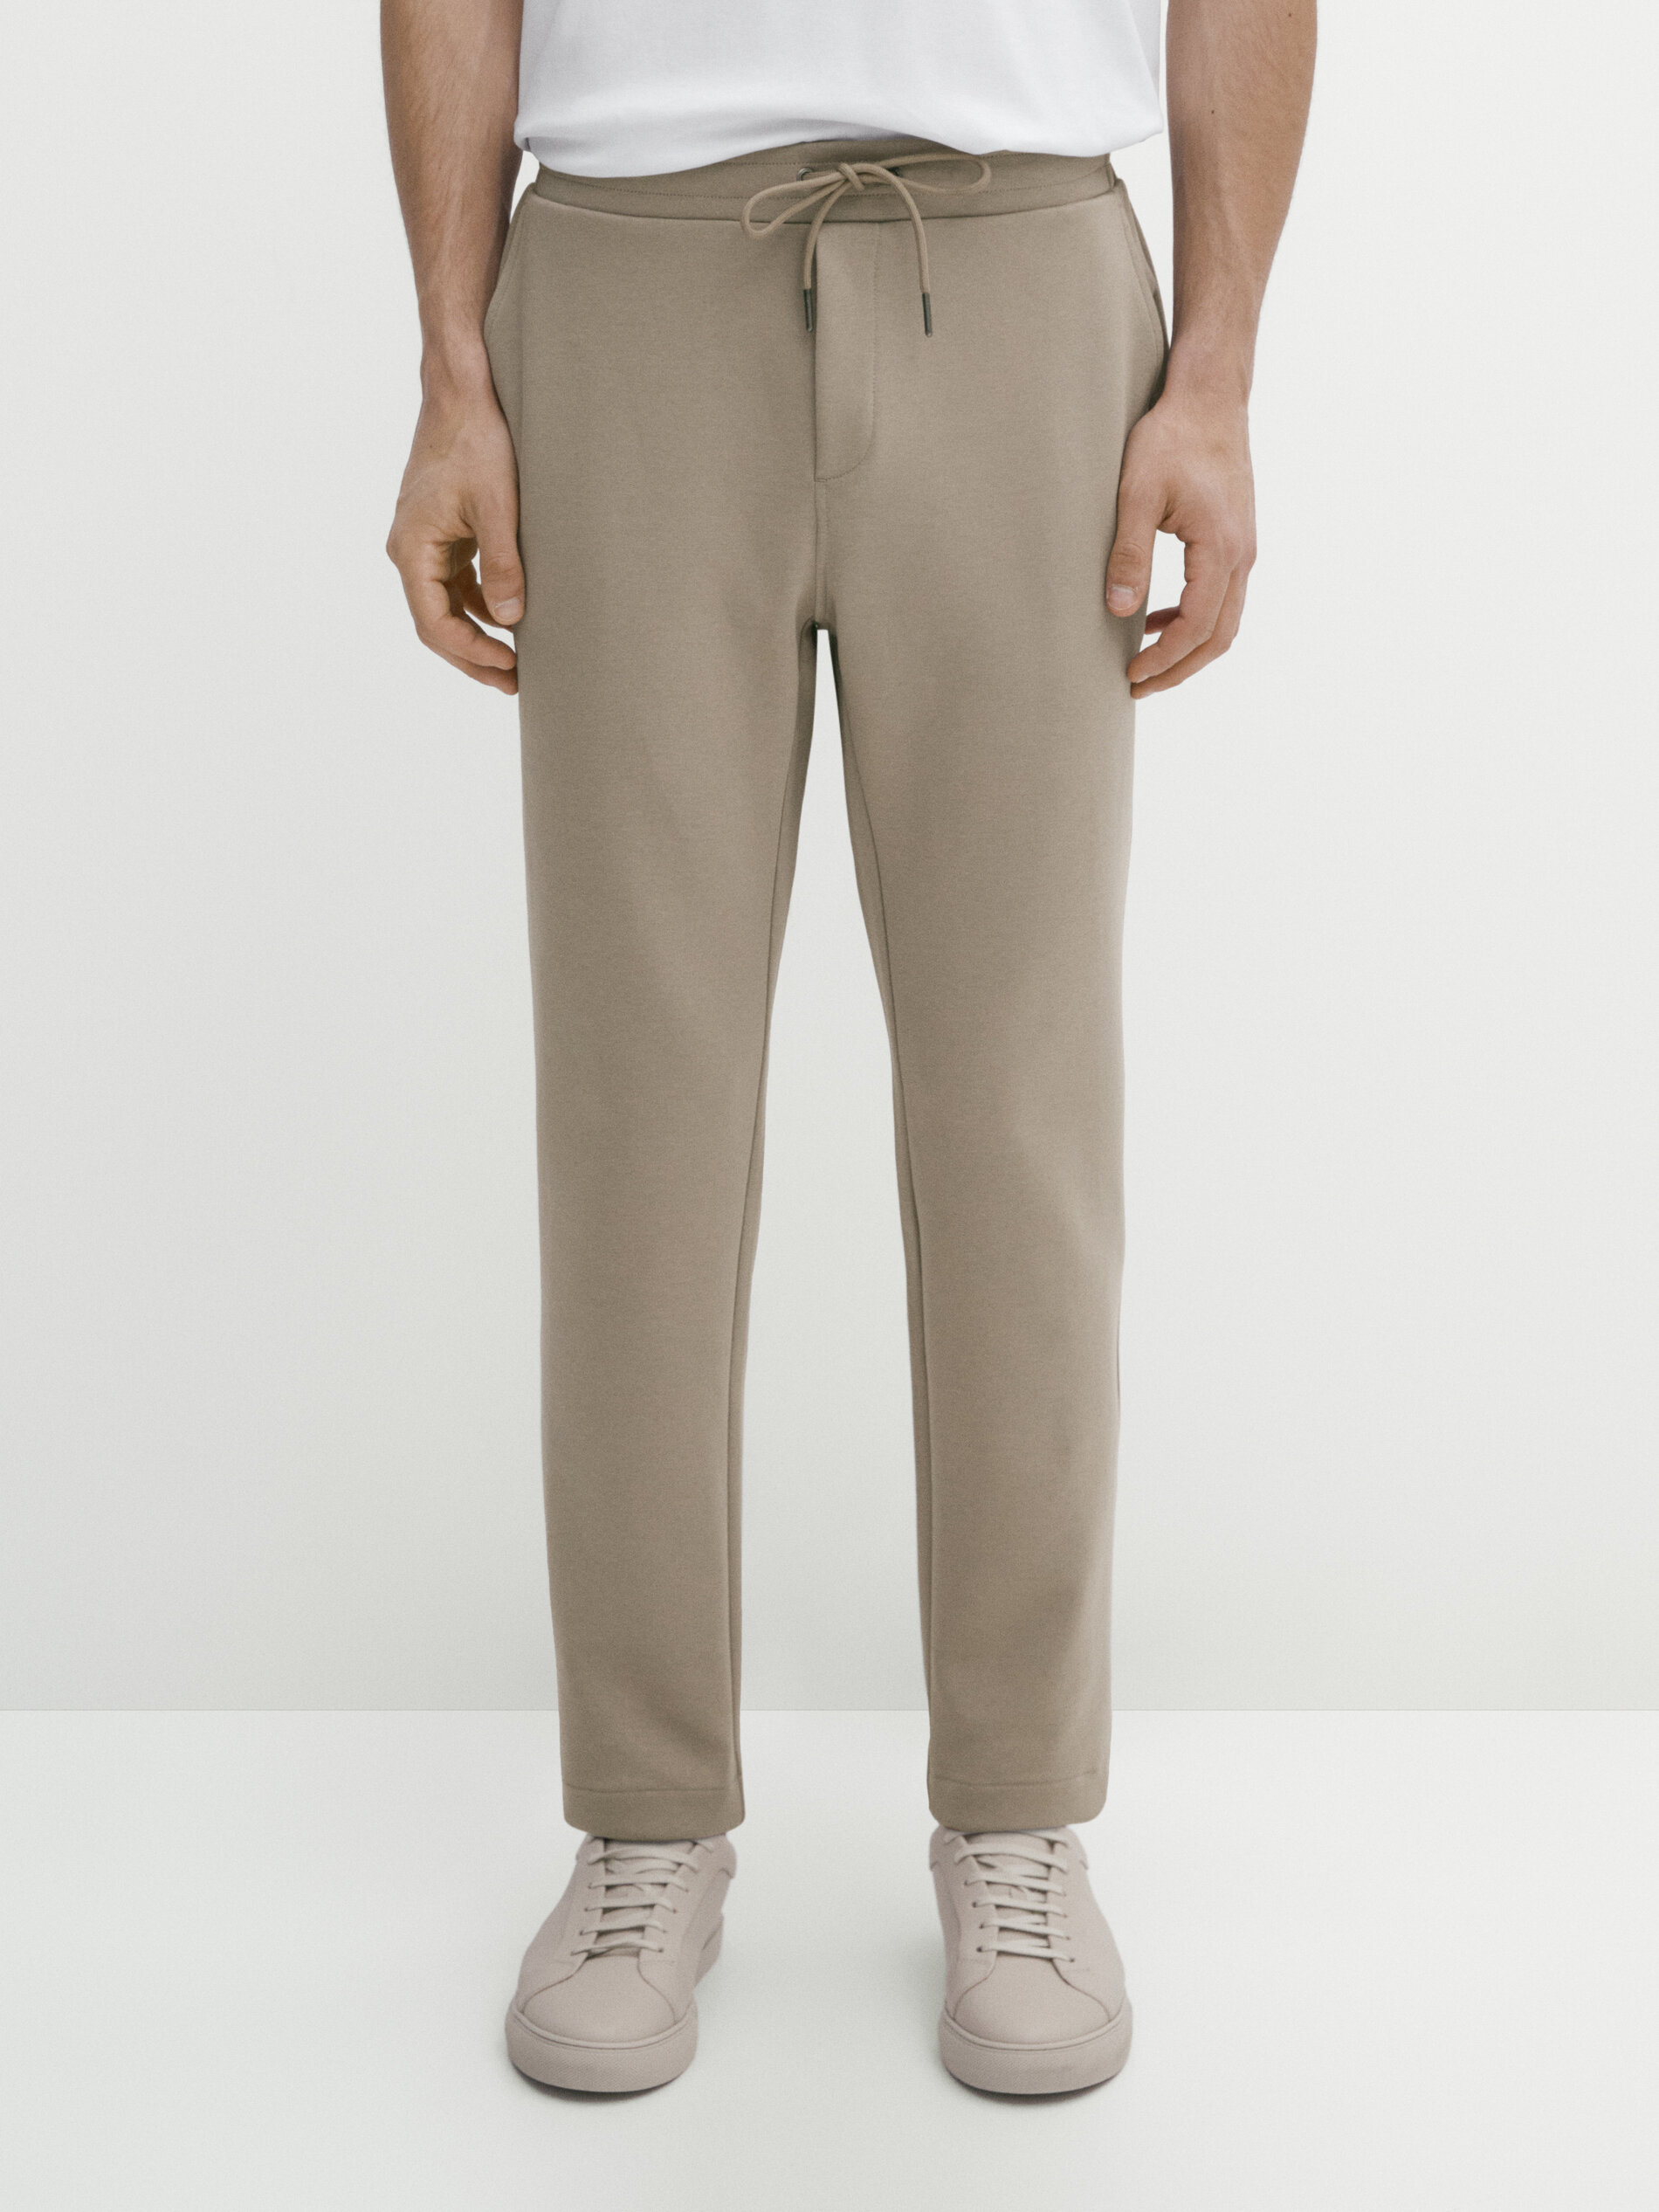 Buy Beige Cotton-Linen Slim Fit Men's Trousers-North Republic